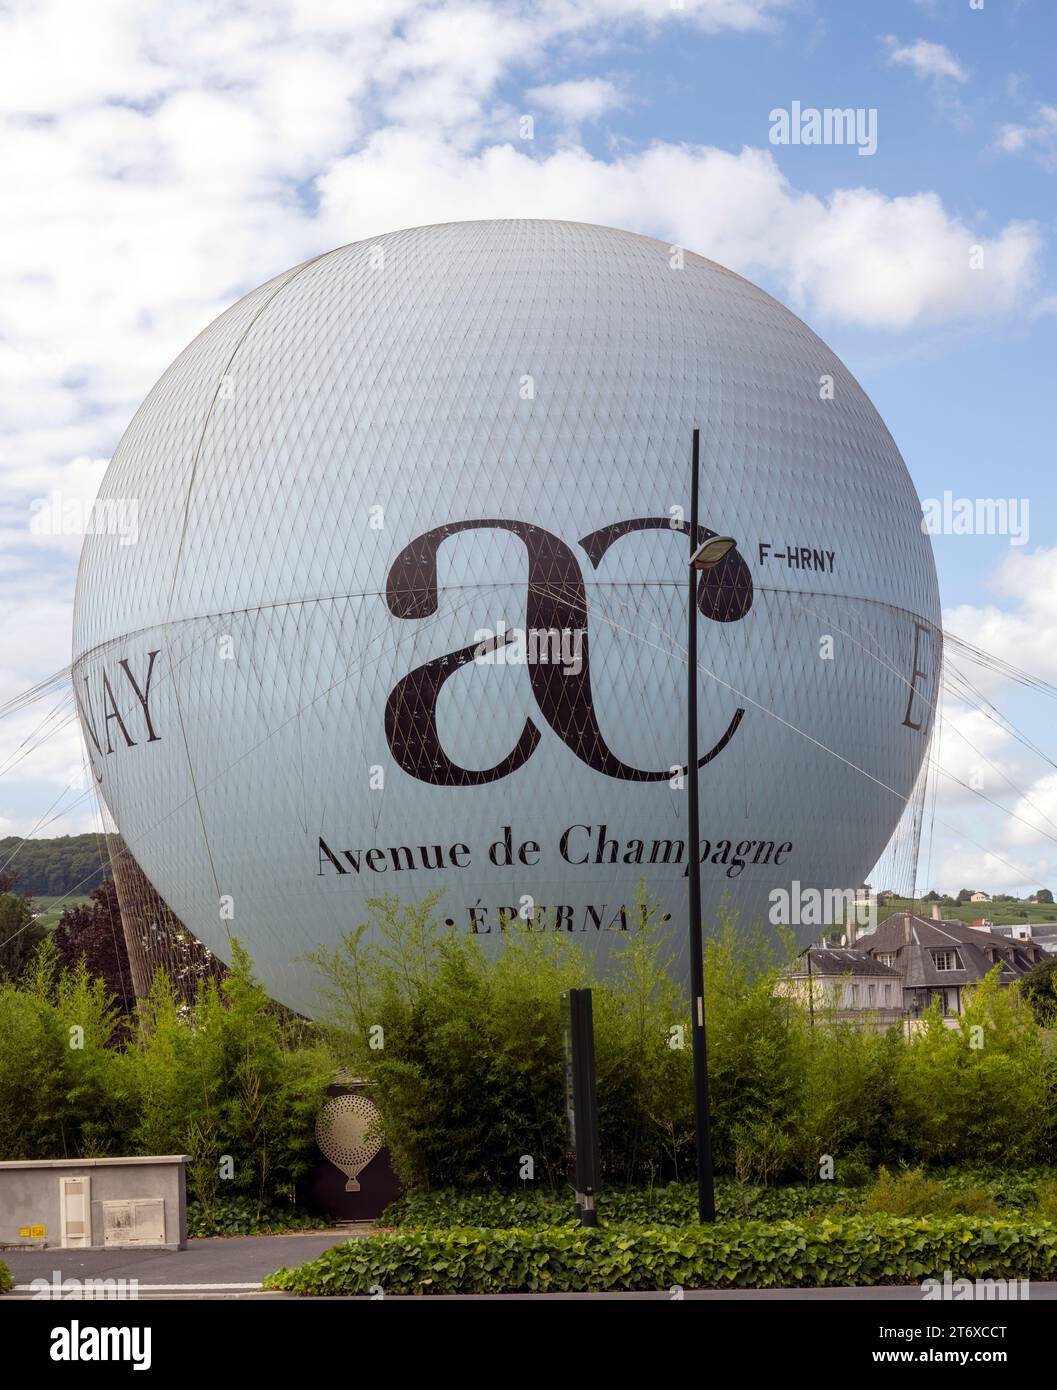 Montgolfière dans Avenue de Champagne, Epernay, Marne, France - une attraction touristique. Banque D'Images